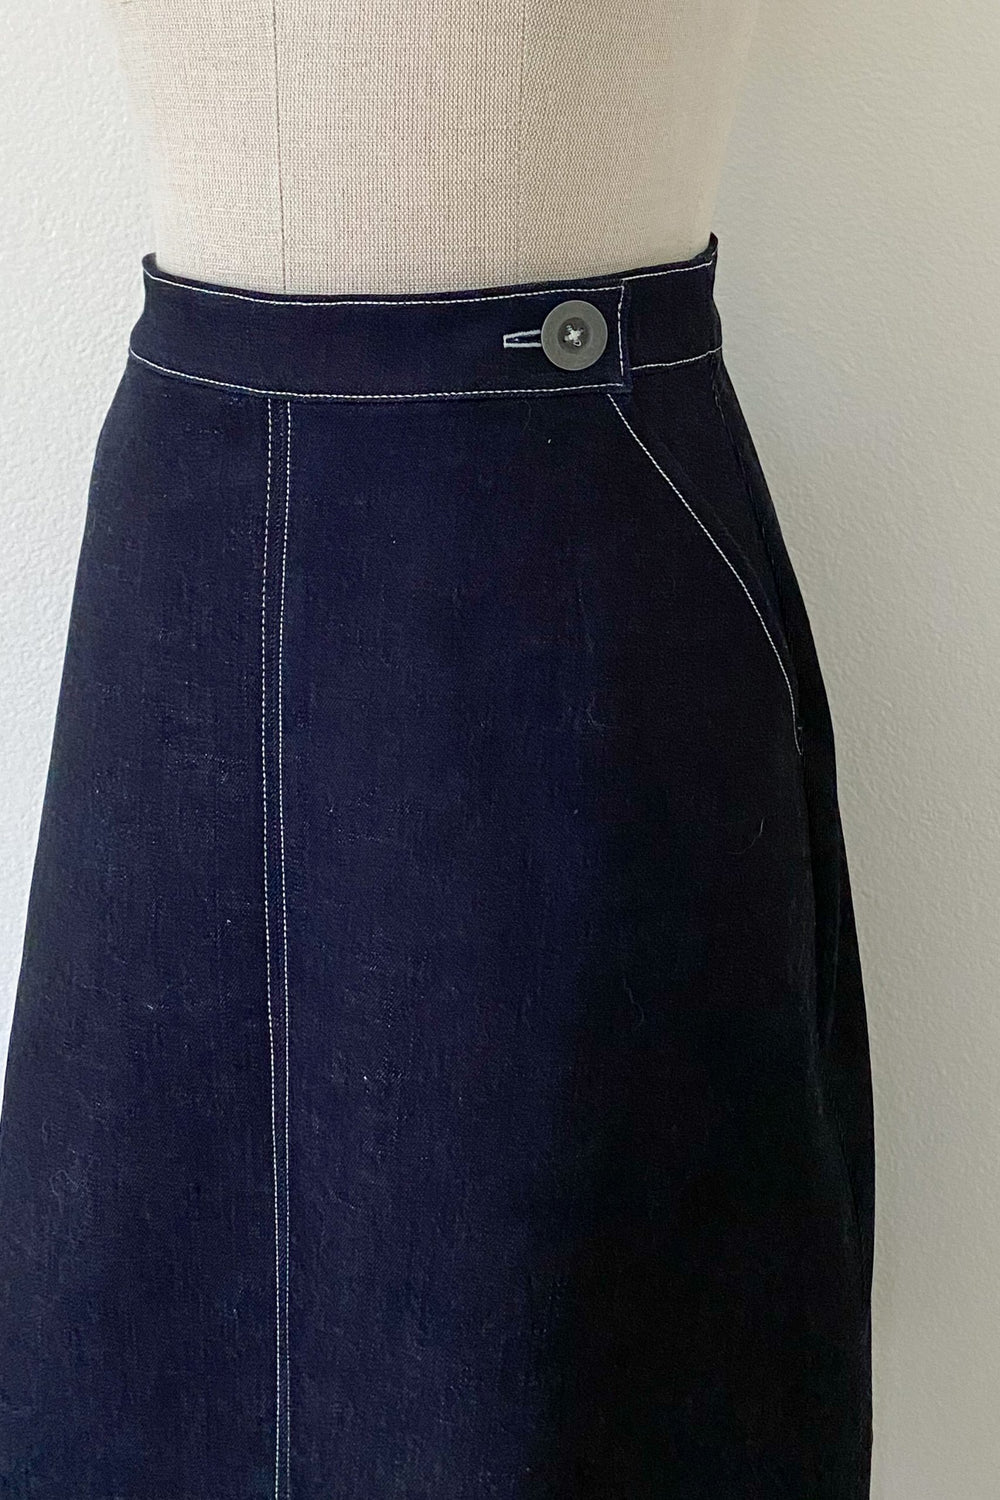 Blue Dot Patterns No-Zip Skirt